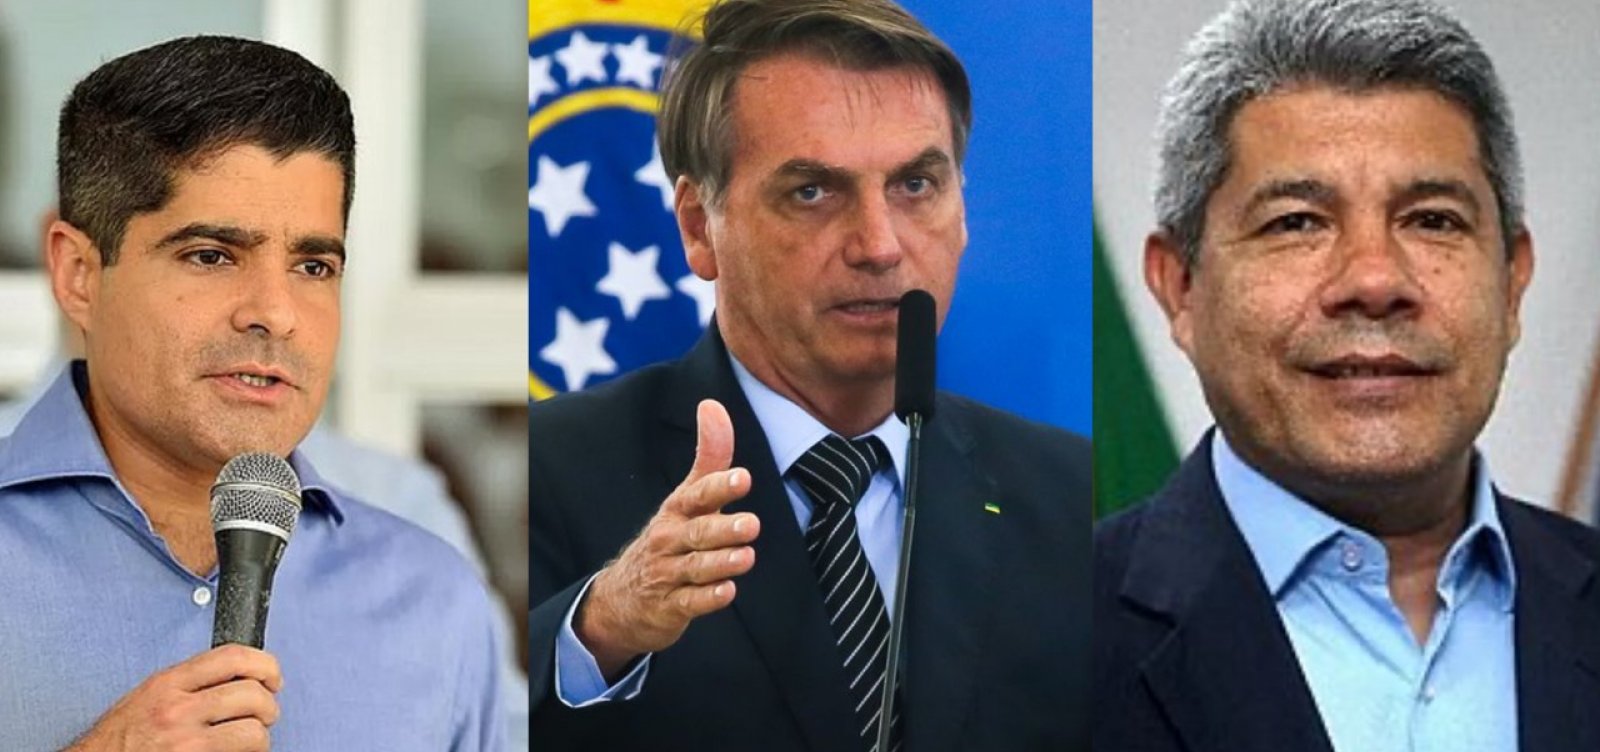 Eleitorado do agronegócio baiano será disputado por Bolsonaro, ACM Neto e Jerônimo nesta semana